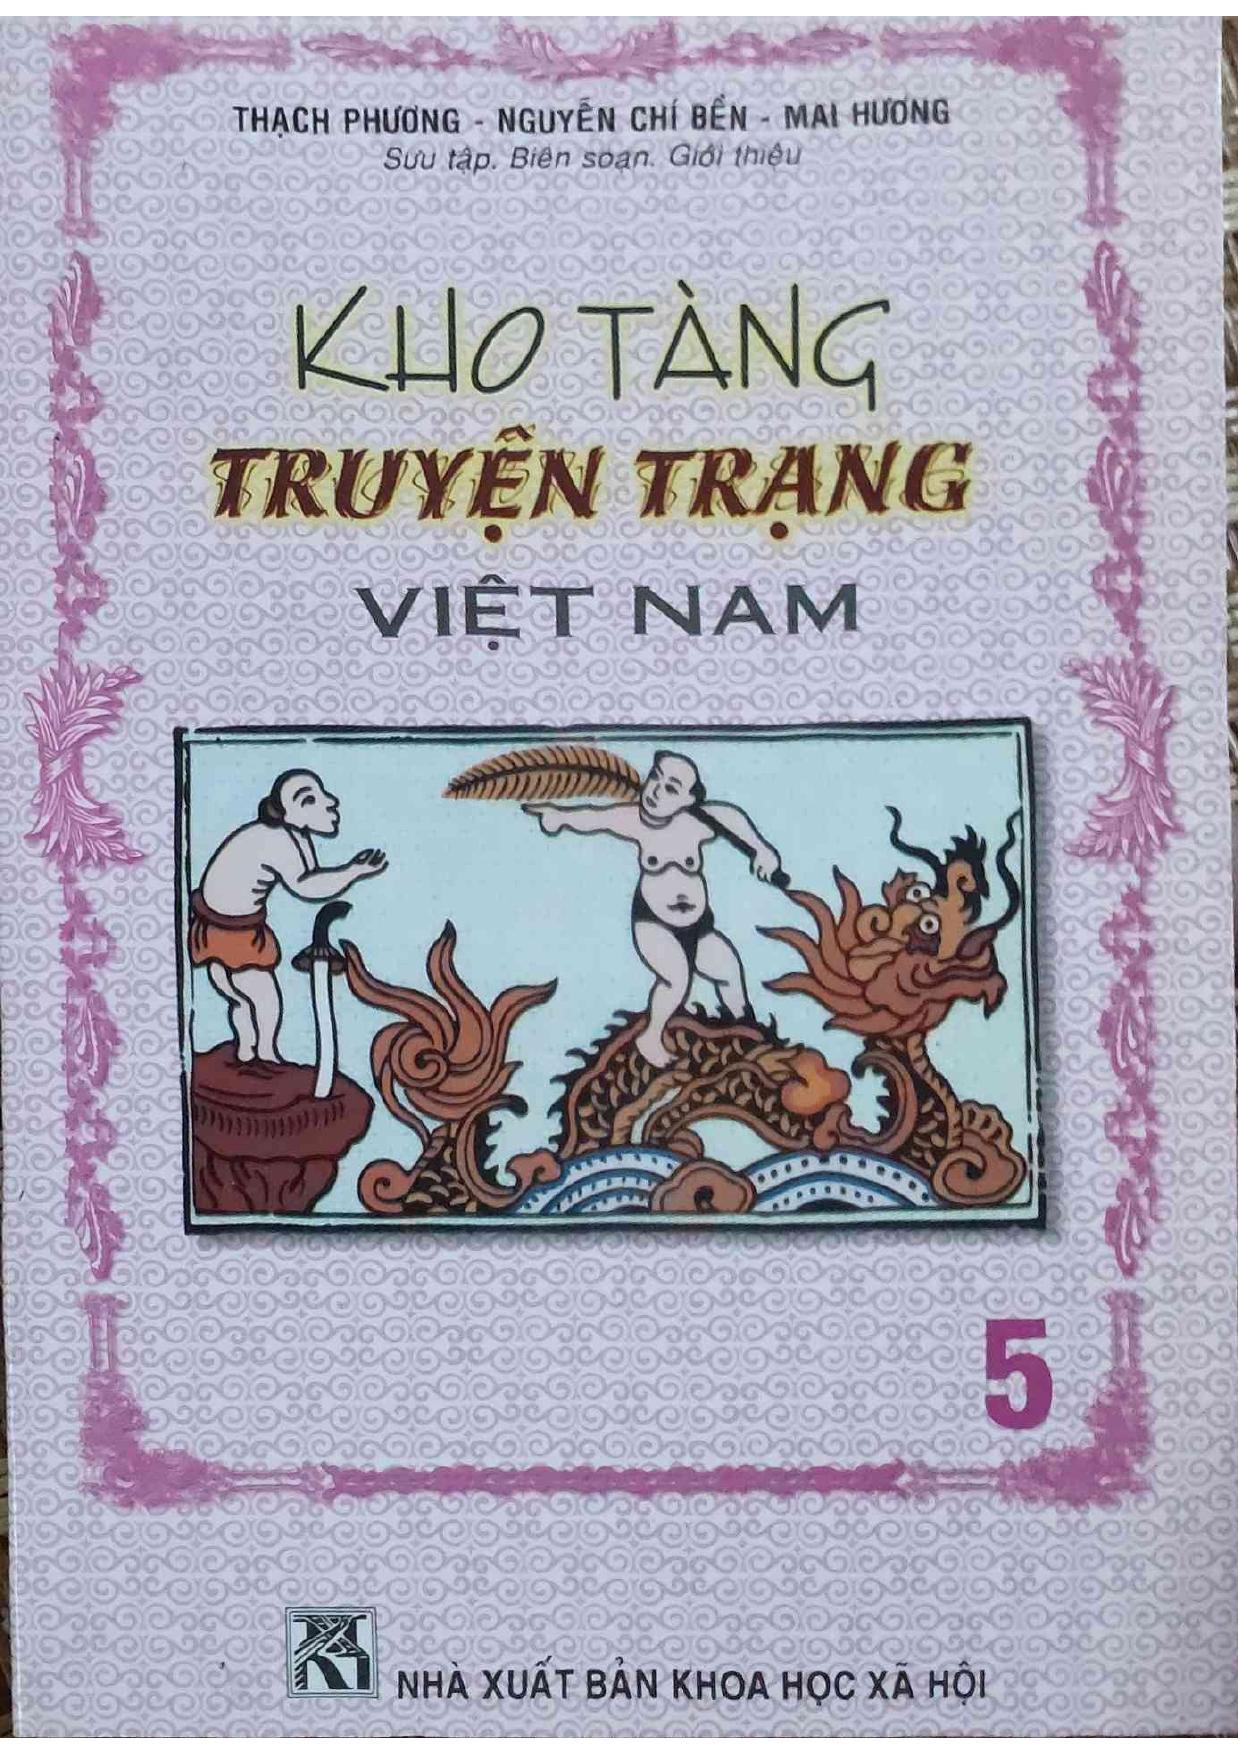 Kho Tàng Truyện Trạng Việt Nam Tập 5